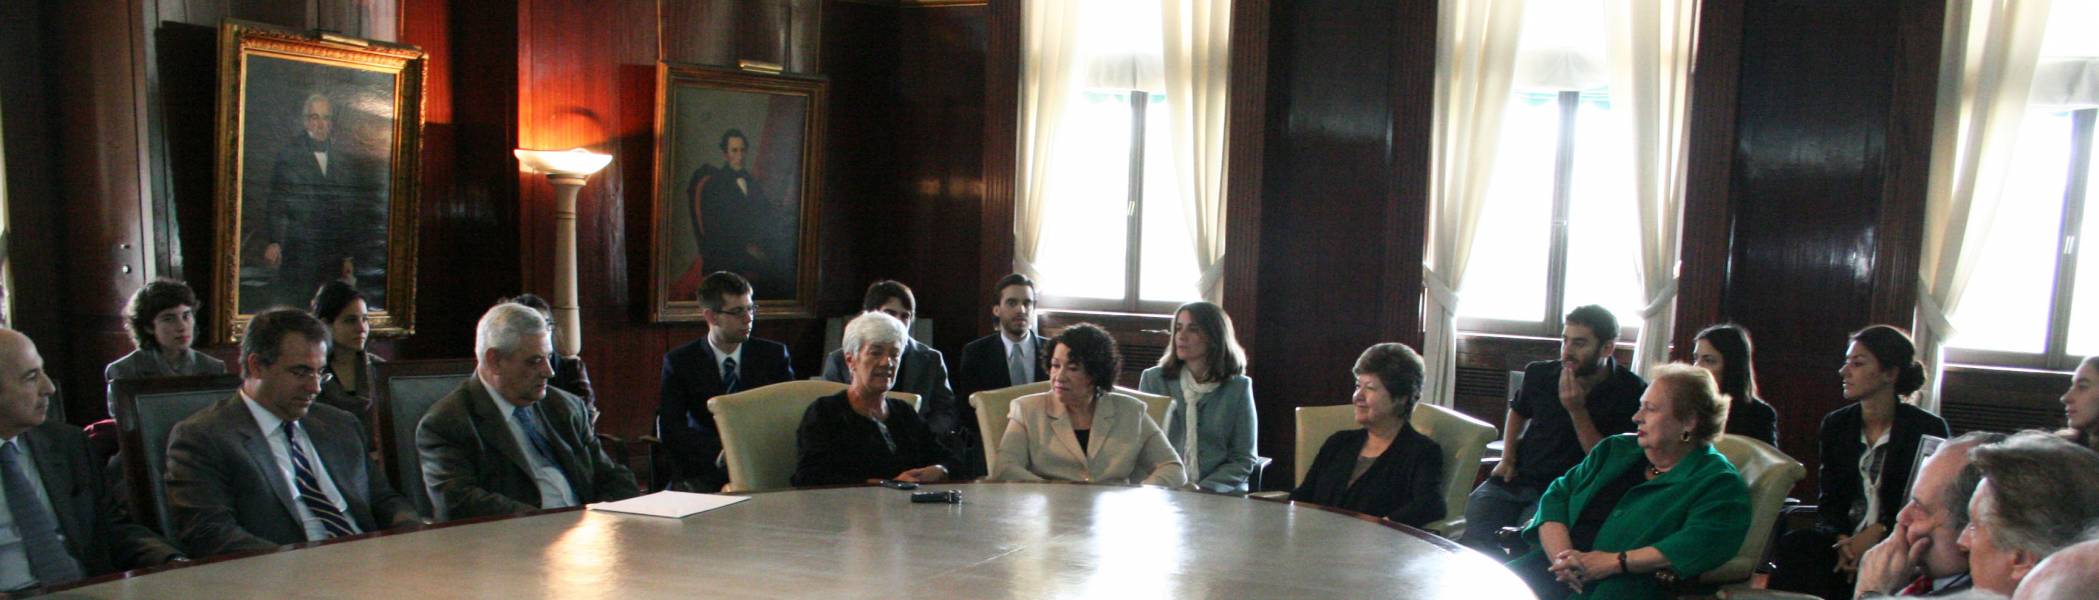 La Jueza de la Suprema Corte de Justicia de los Estados Unidos, Sonia Sotomayor, visitó la Facultad de Derecho